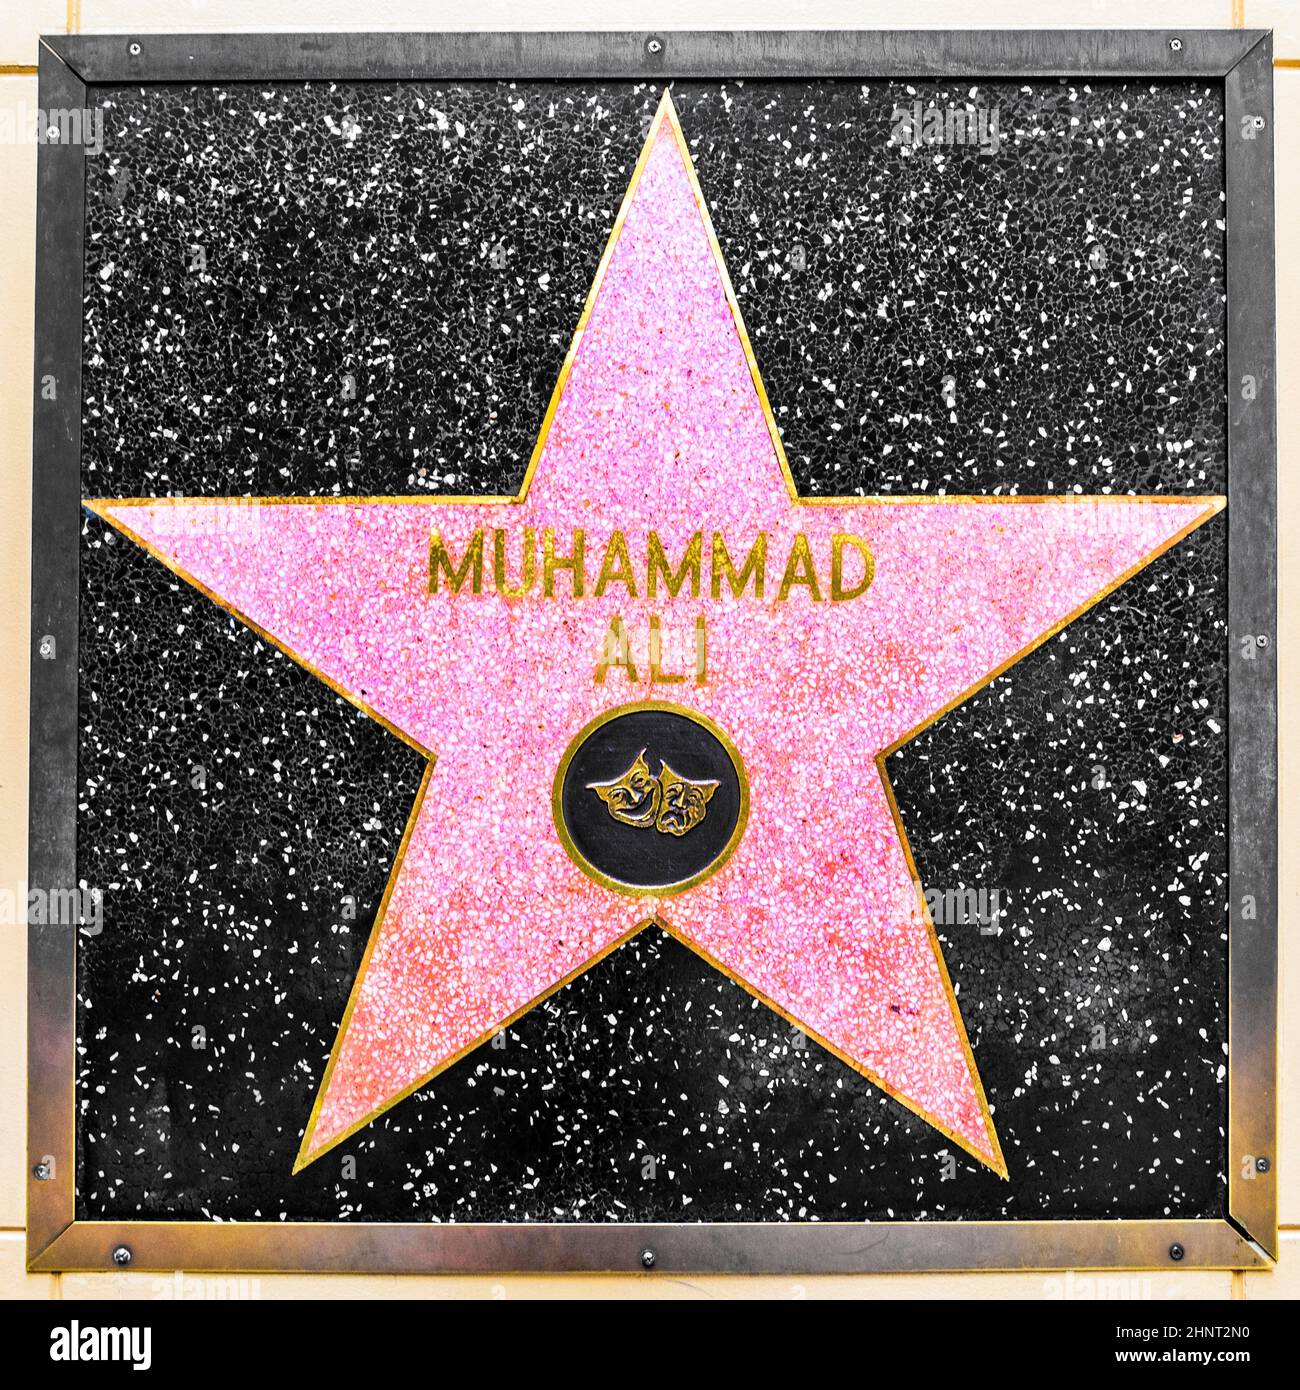 Nahaufnahme von Star auf dem Hollywood Walk of Fame für Muhammad Ali Stockfoto